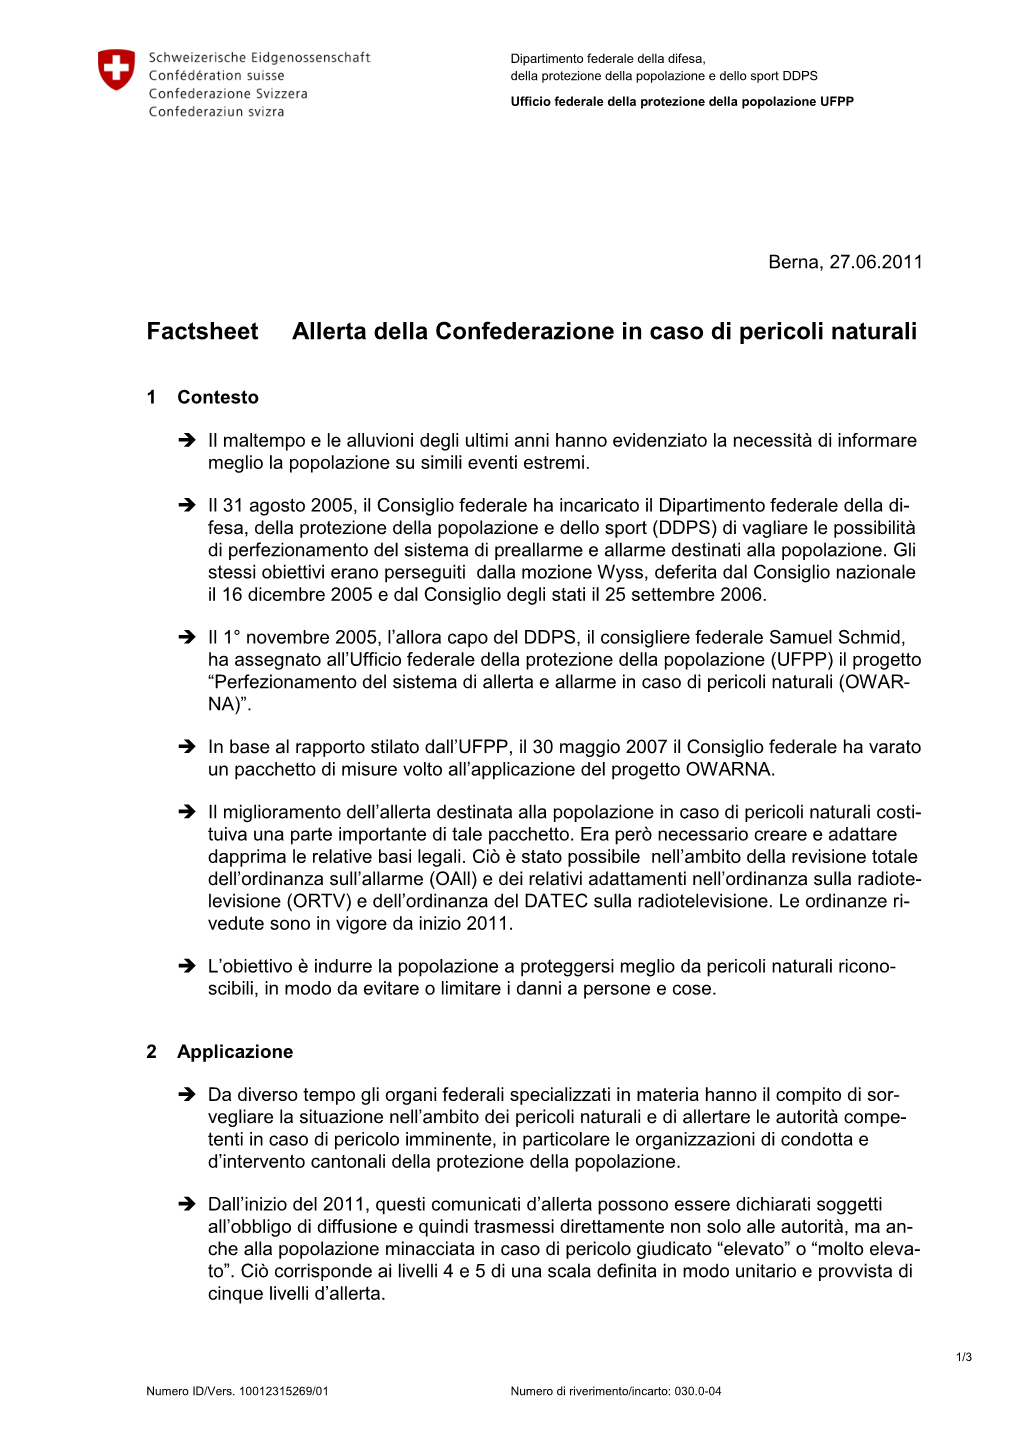 Factsheet Allerta Della Confederazione in Caso Di Pericoli Naturali